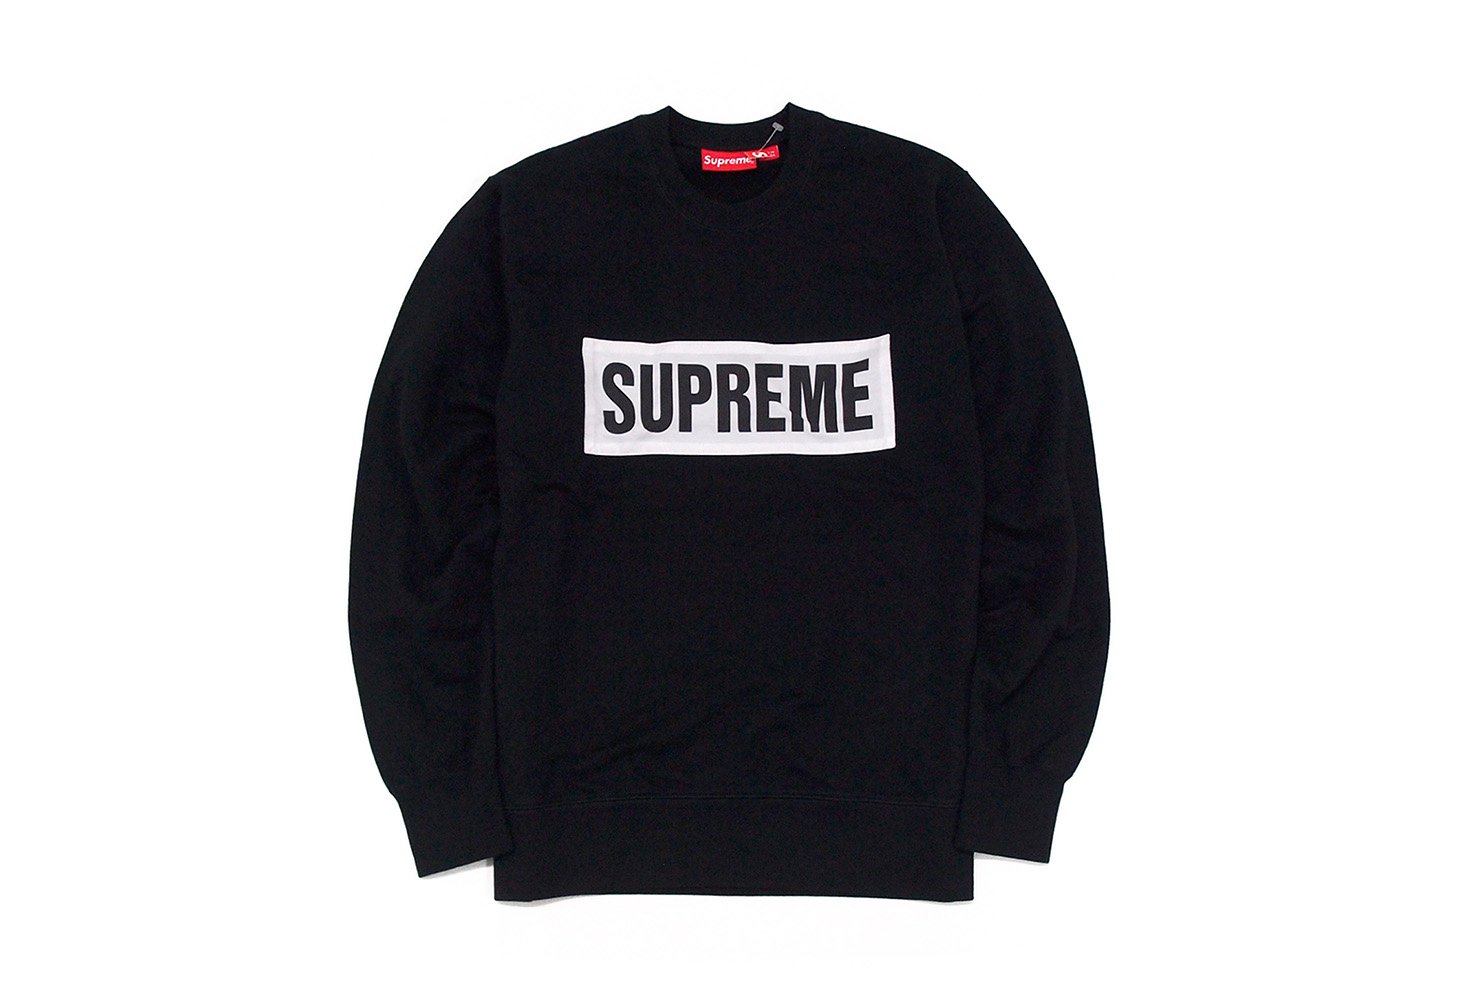 Supreme terry crew neck sweatshirt 黒 M